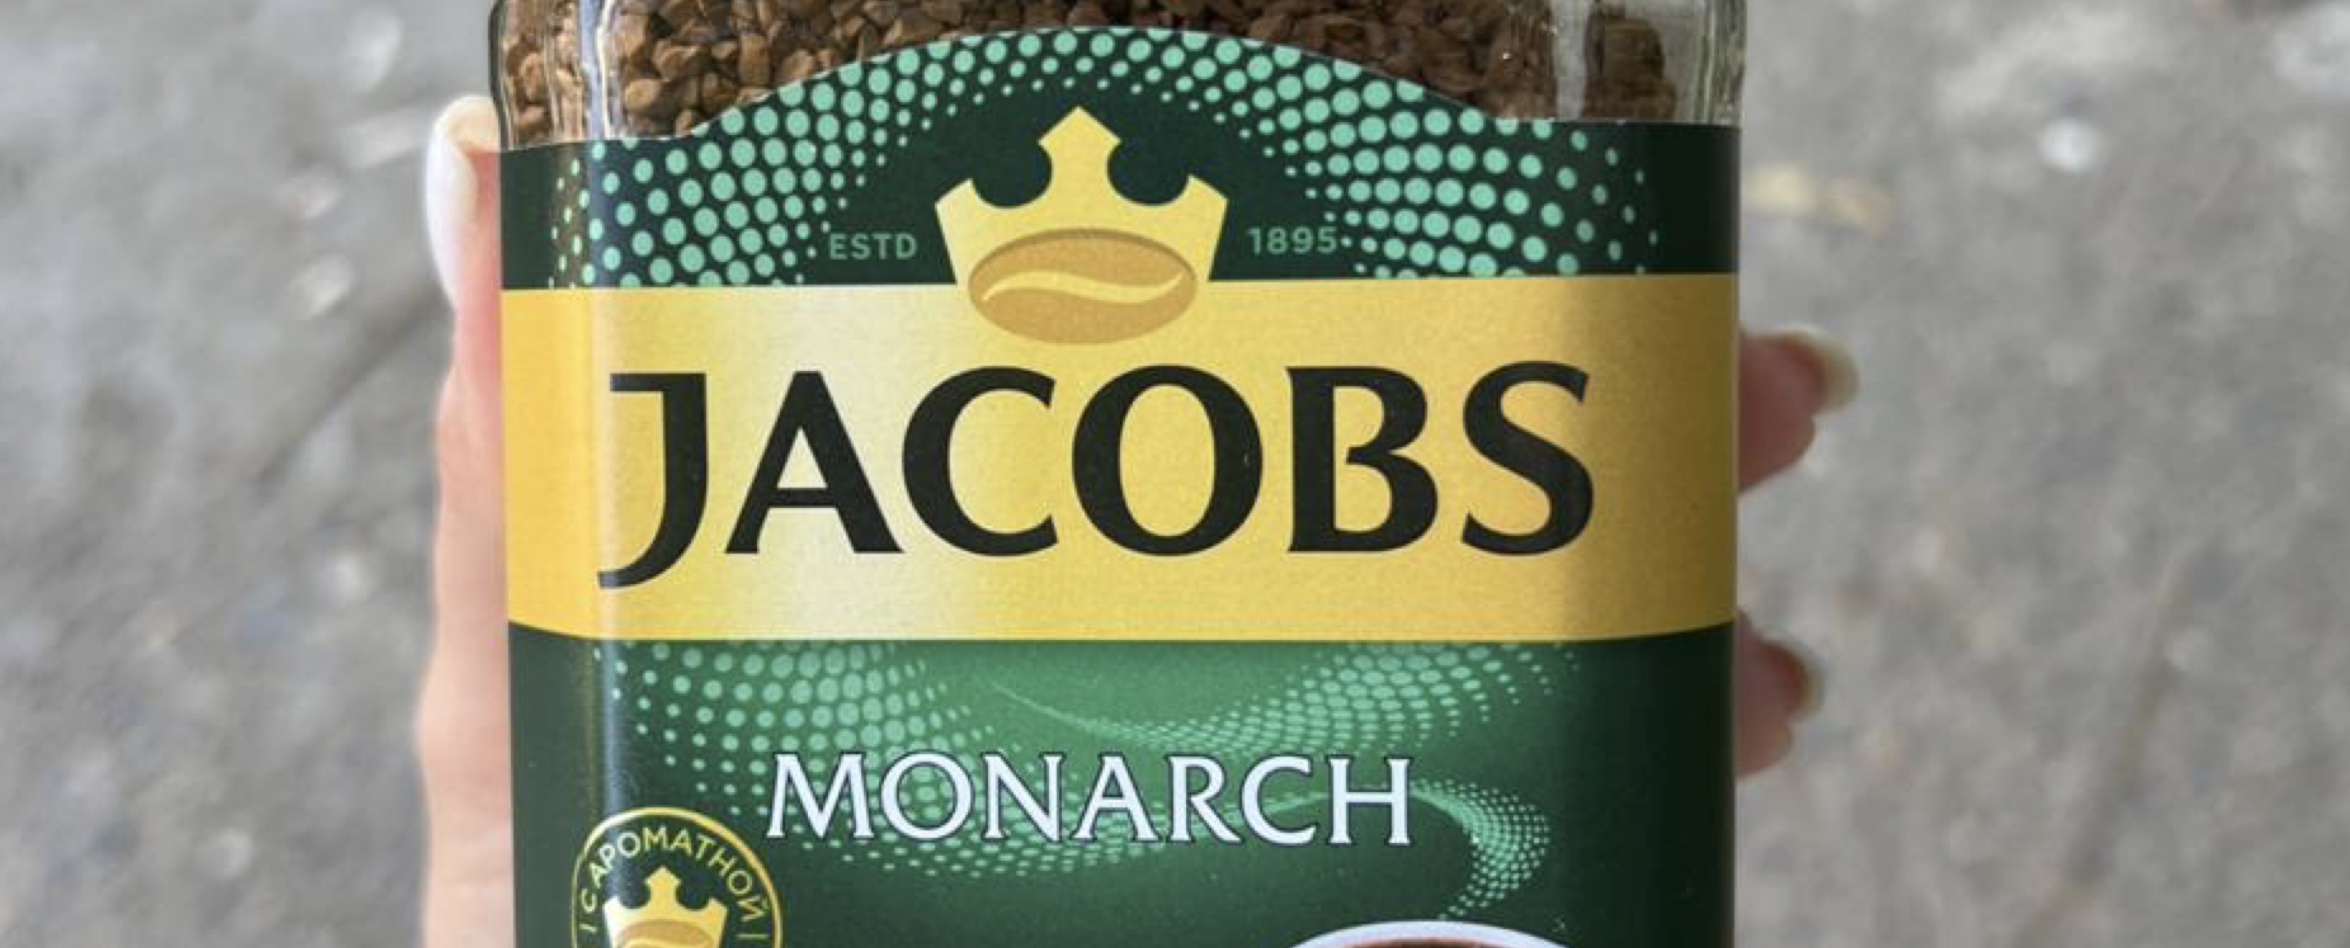 Кофе Jacobs исчезает с магазинных полок: бренд сменил название